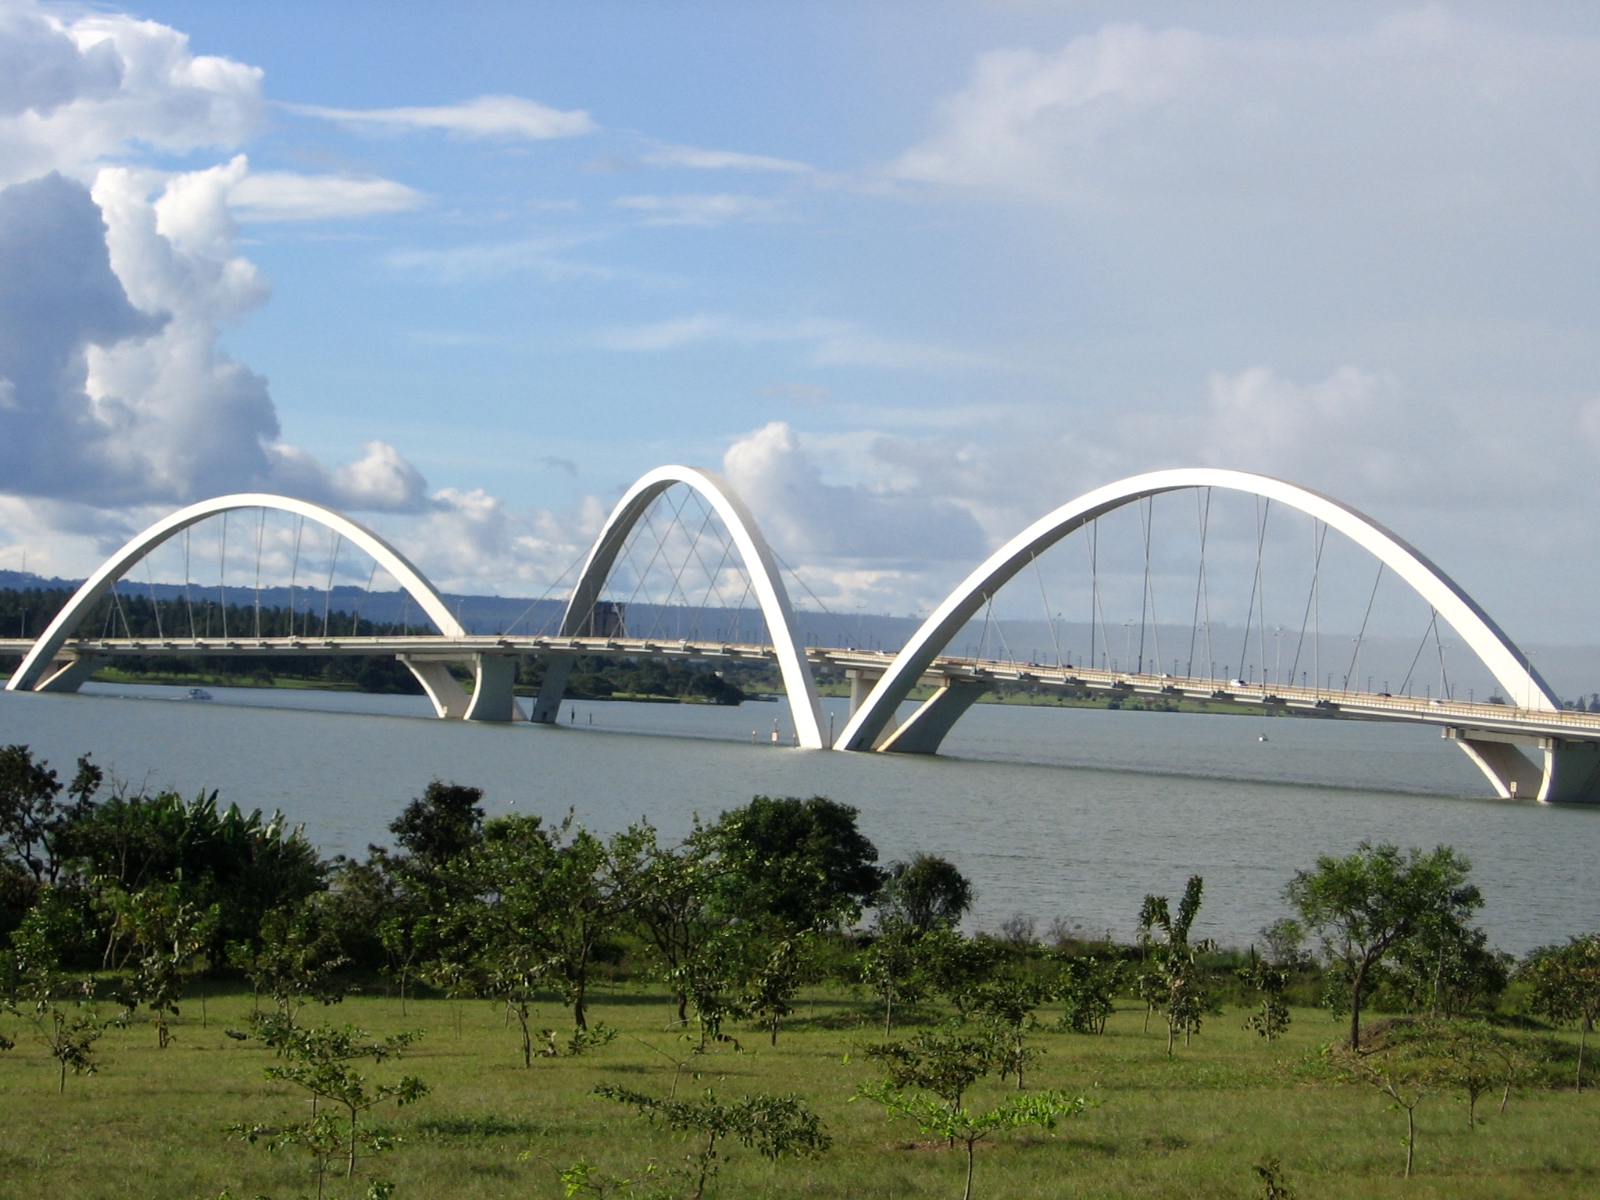 Столица бразилии бразилиа. Мост Жуселину Кубичека. Мост Жуселину Кубичека Бразилиа. Мост Жуселину Кубичека, Бразилиа, Бразилия. Мост Juscelino Kubitschek в Бразилиа (Бразилия).